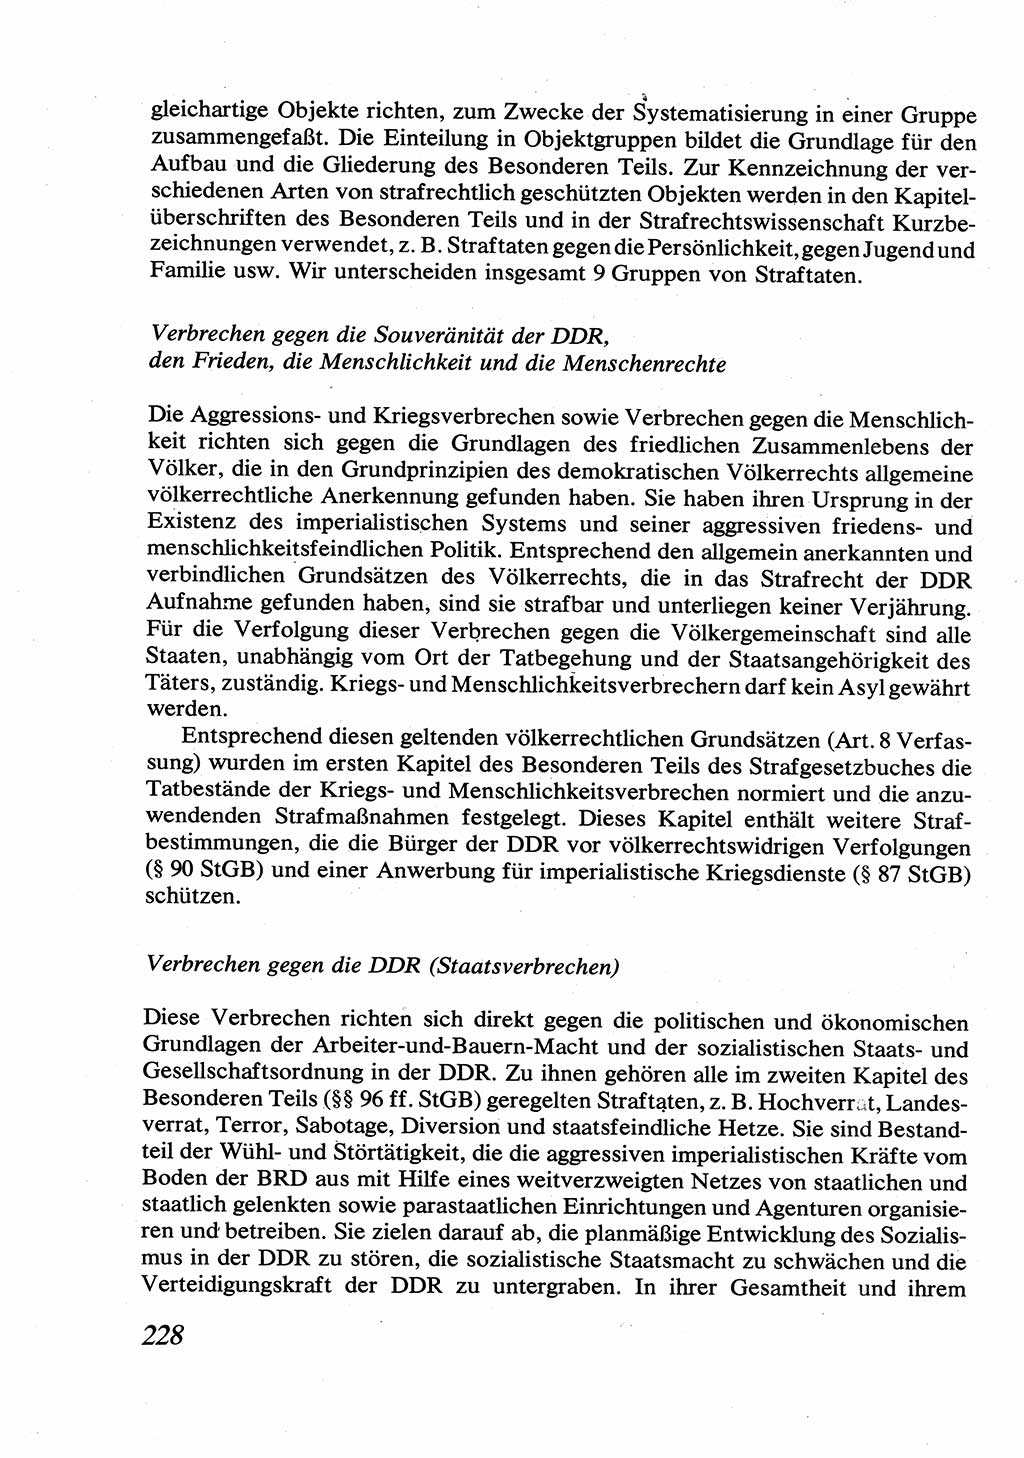 Strafrecht [Deutsche Demokratische Republik (DDR)], Allgemeiner Teil, Lehrbuch 1976, Seite 228 (Strafr. DDR AT Lb. 1976, S. 228)